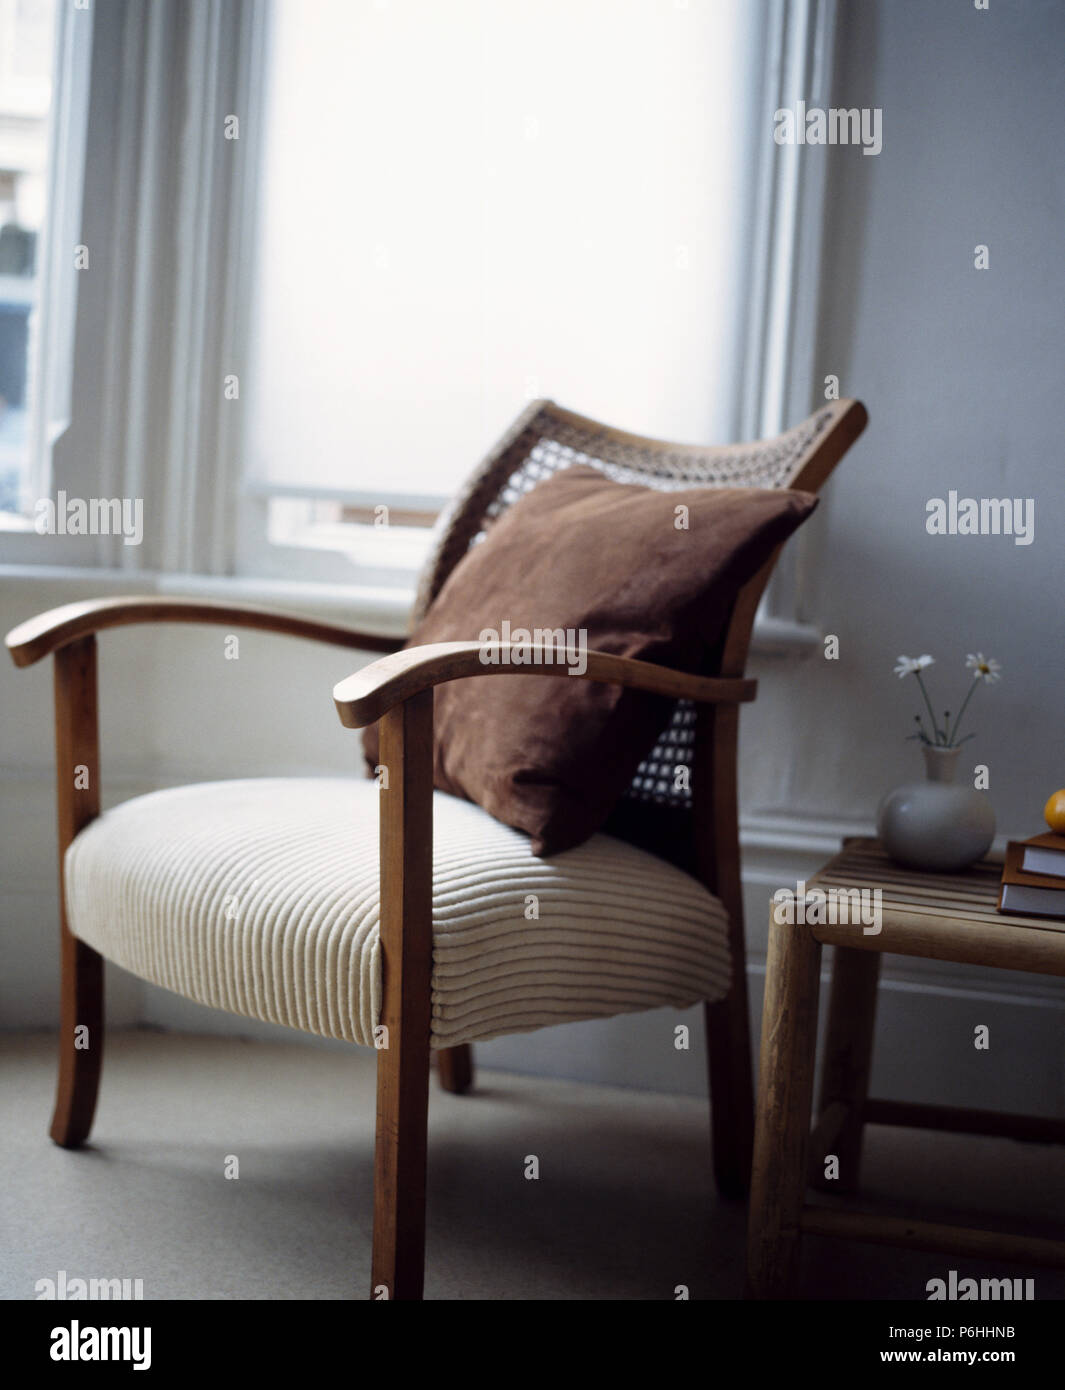 Chaise fauteuil argenté beige CLOUD - Table/Chaise Design Élégant